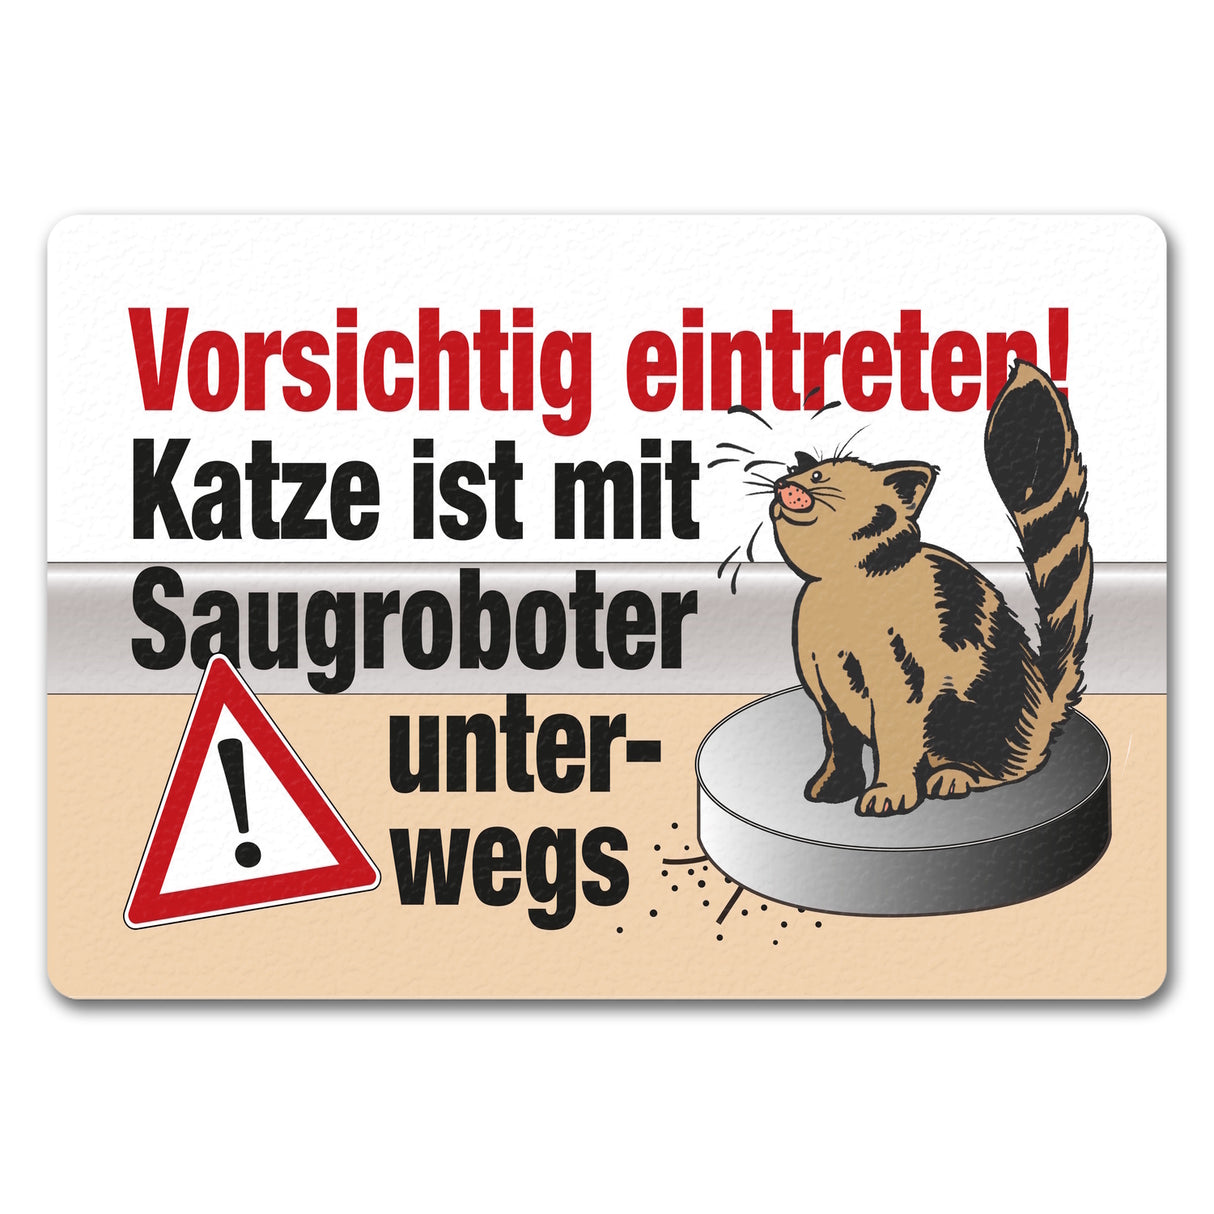 Vorsichtig eintreten - Katze auf Saugroboter Fußmatte